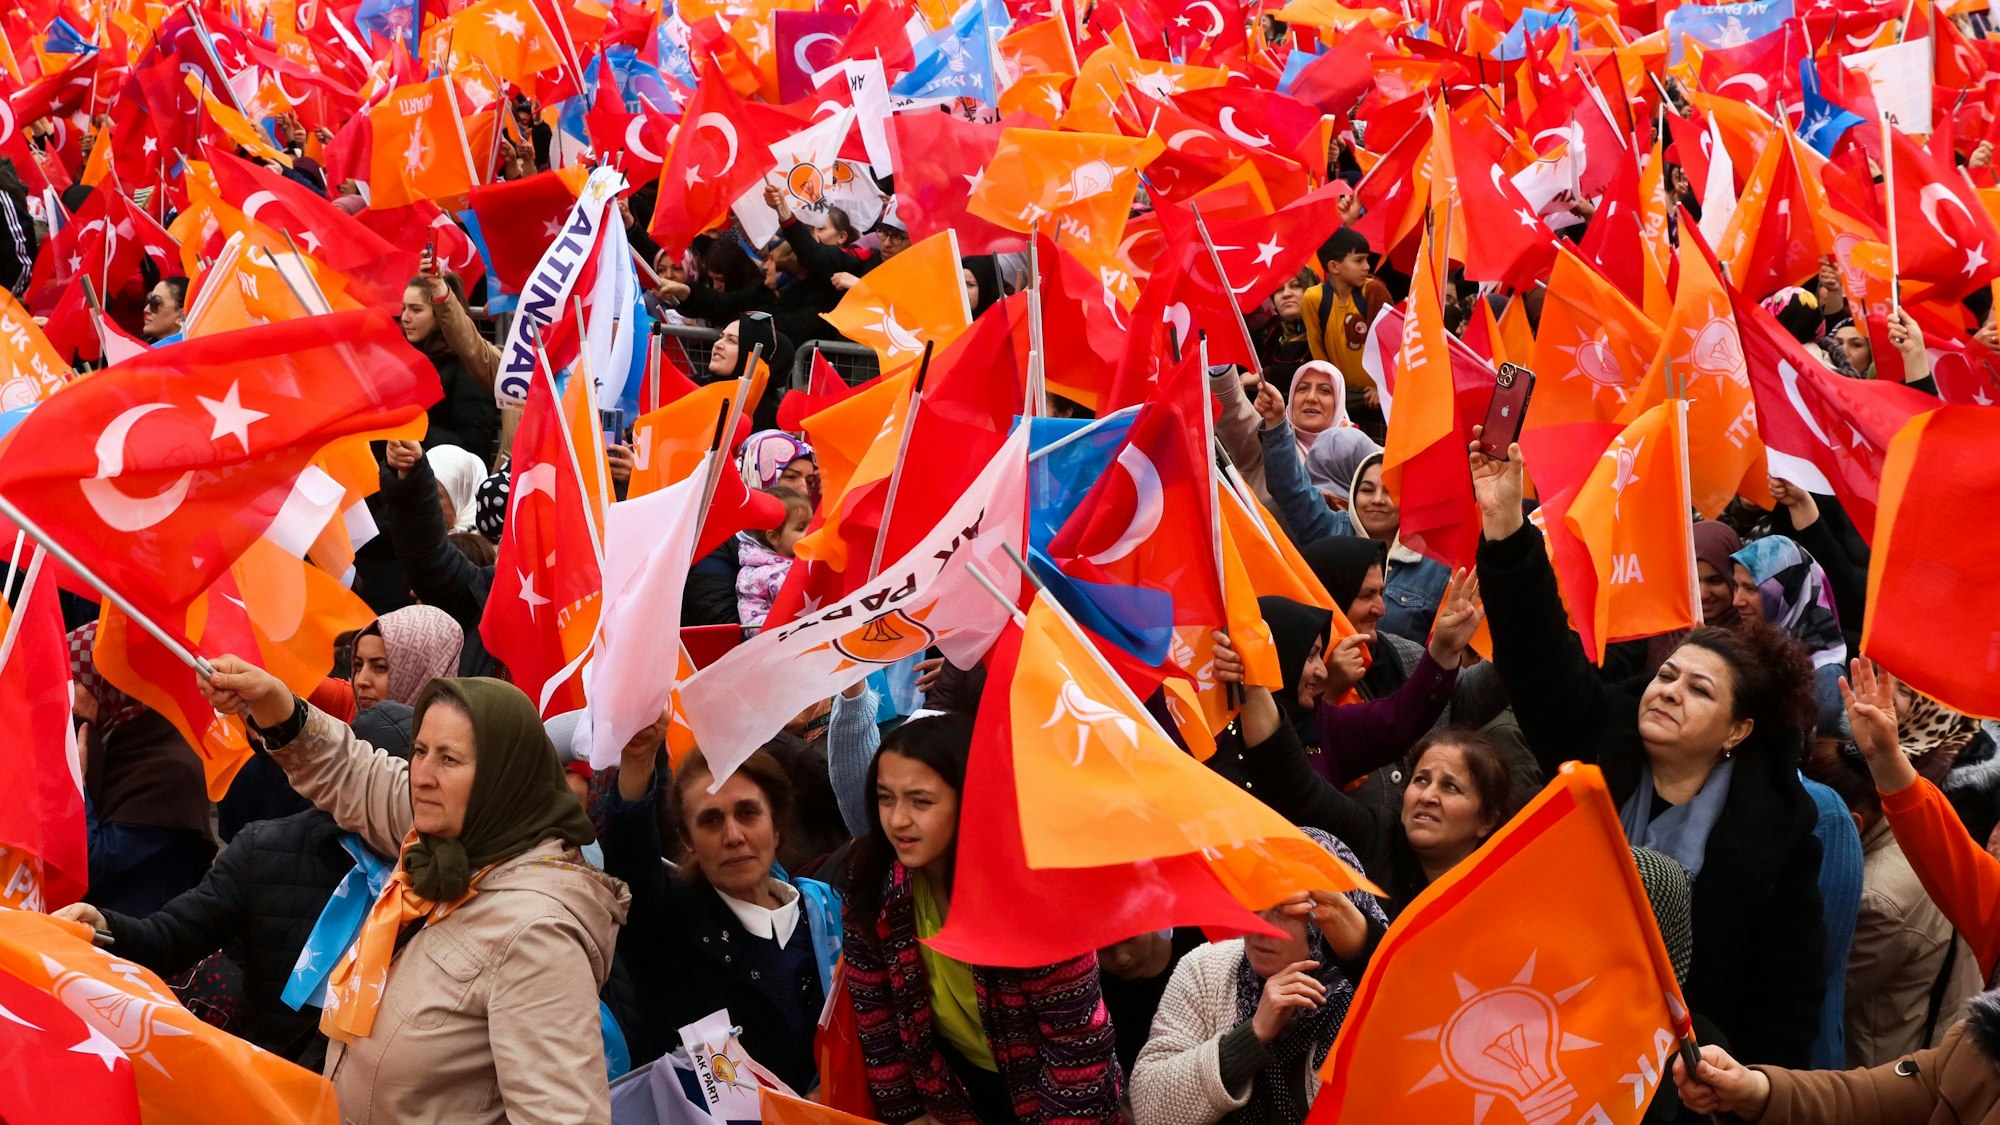 Menschen schwenken türkische Fahnen und Fahnen der regierenden AK-Partei, während sie dem türkischen Präsidenten Erdogan bei einer Wahlkampfveranstaltung zuhören. Am 14. Mai finden in der Türkei sowohl Präsidenten- als auch Parlamentswahlen statt.